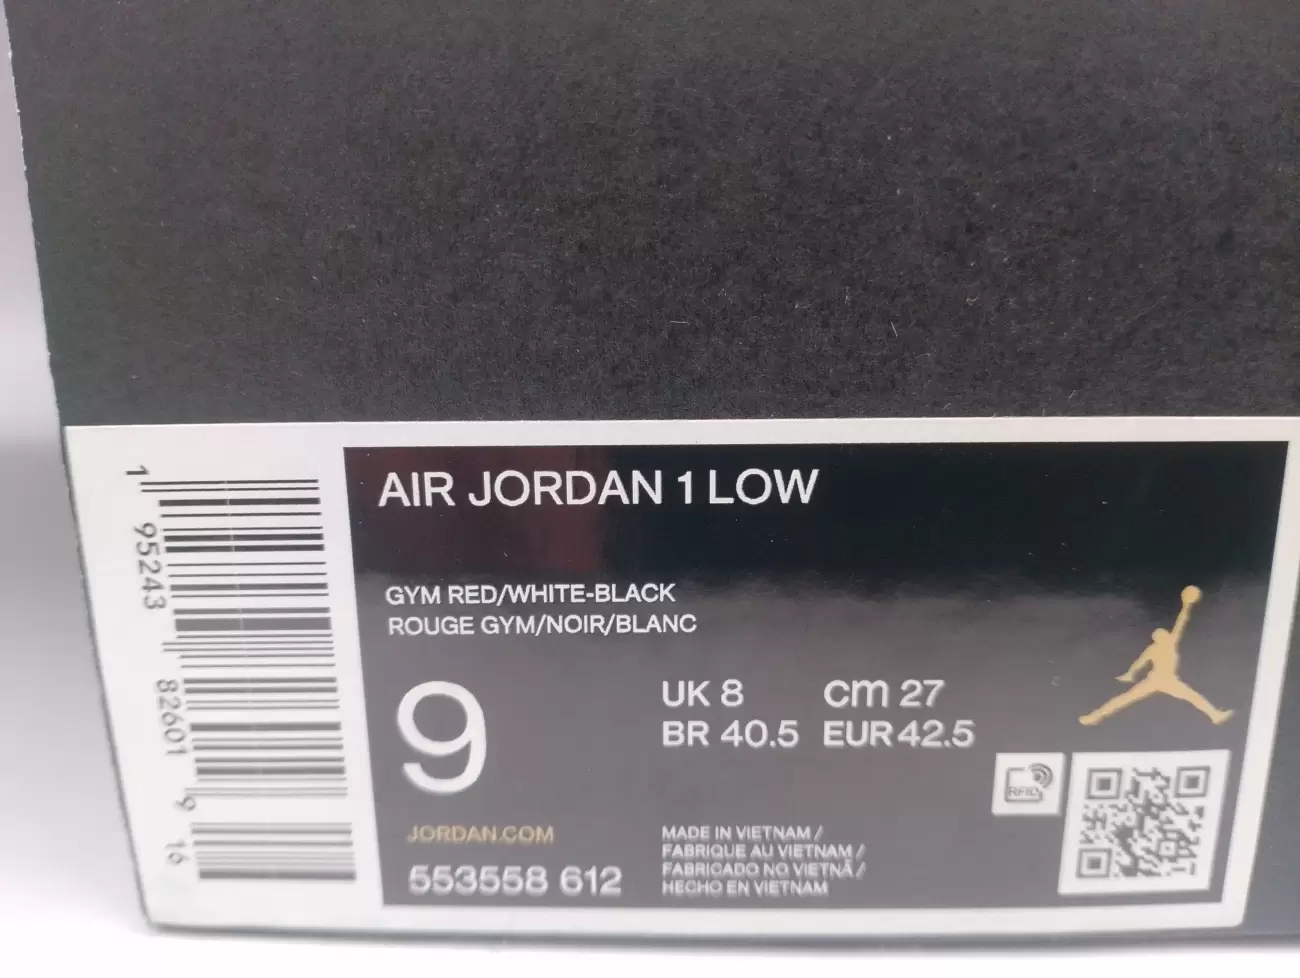 35413 - Jordan 1 Low Bred Toe | Item Details - AfterMarket